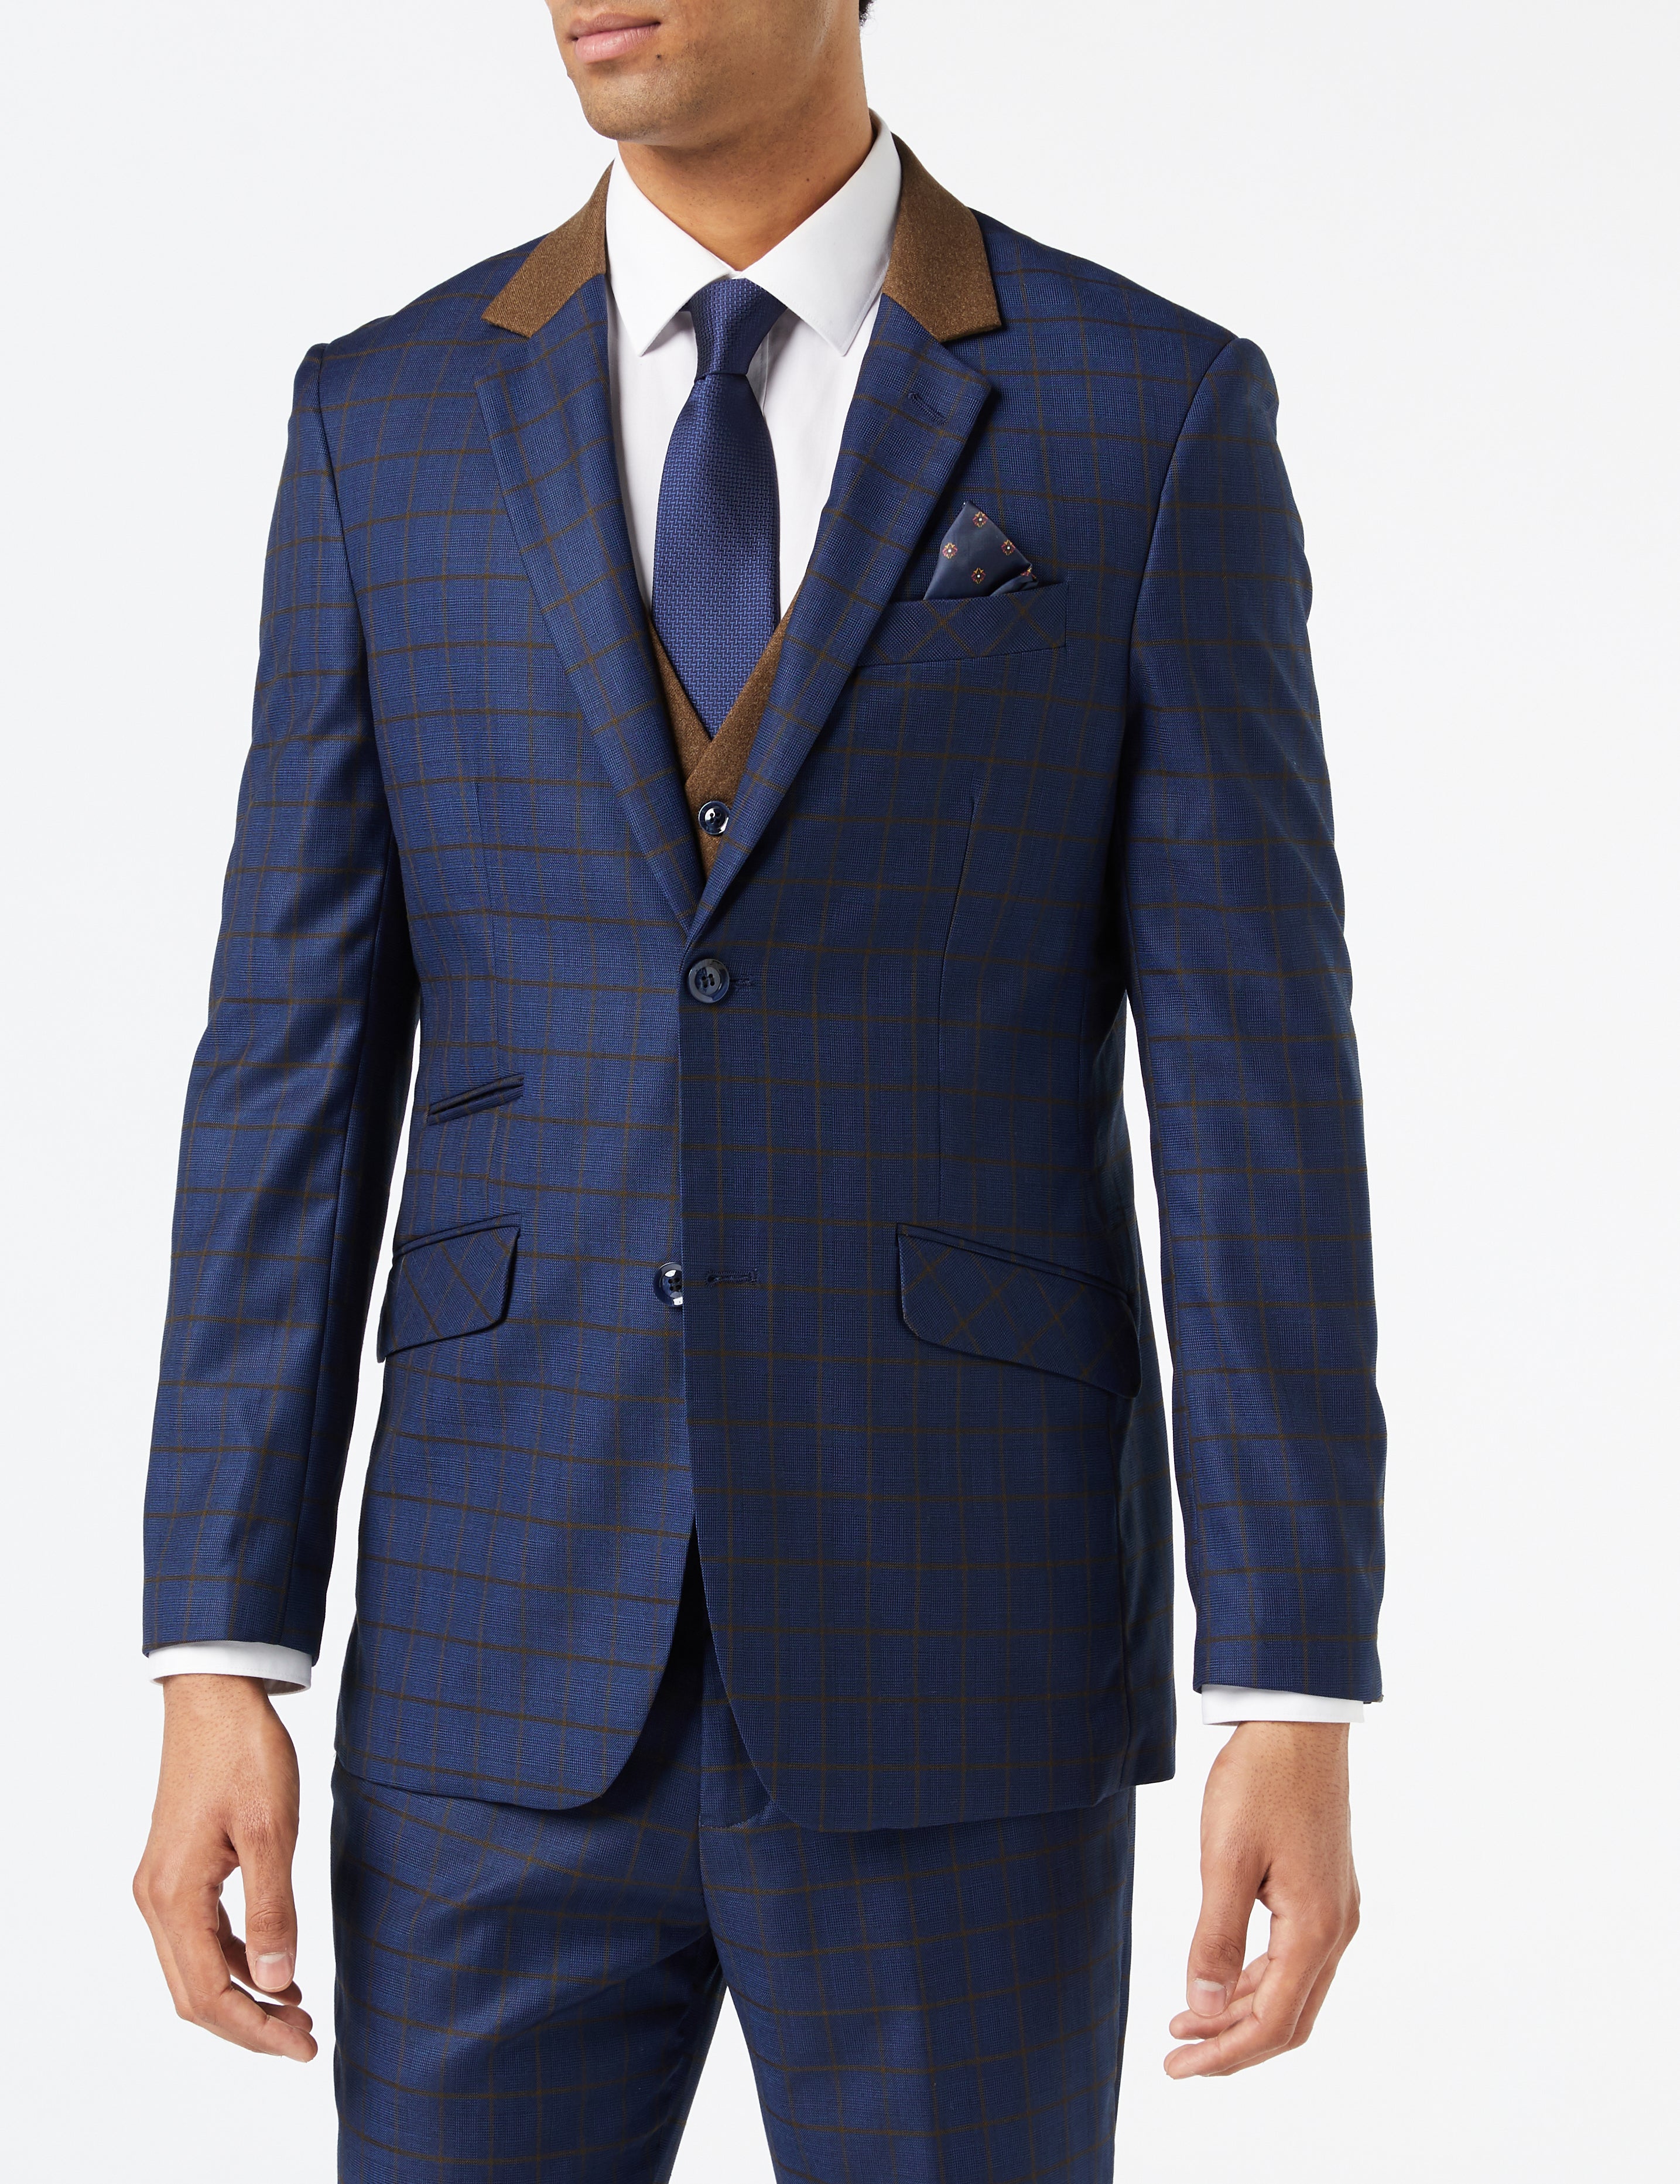 FALCO Blue Grid Check Suit